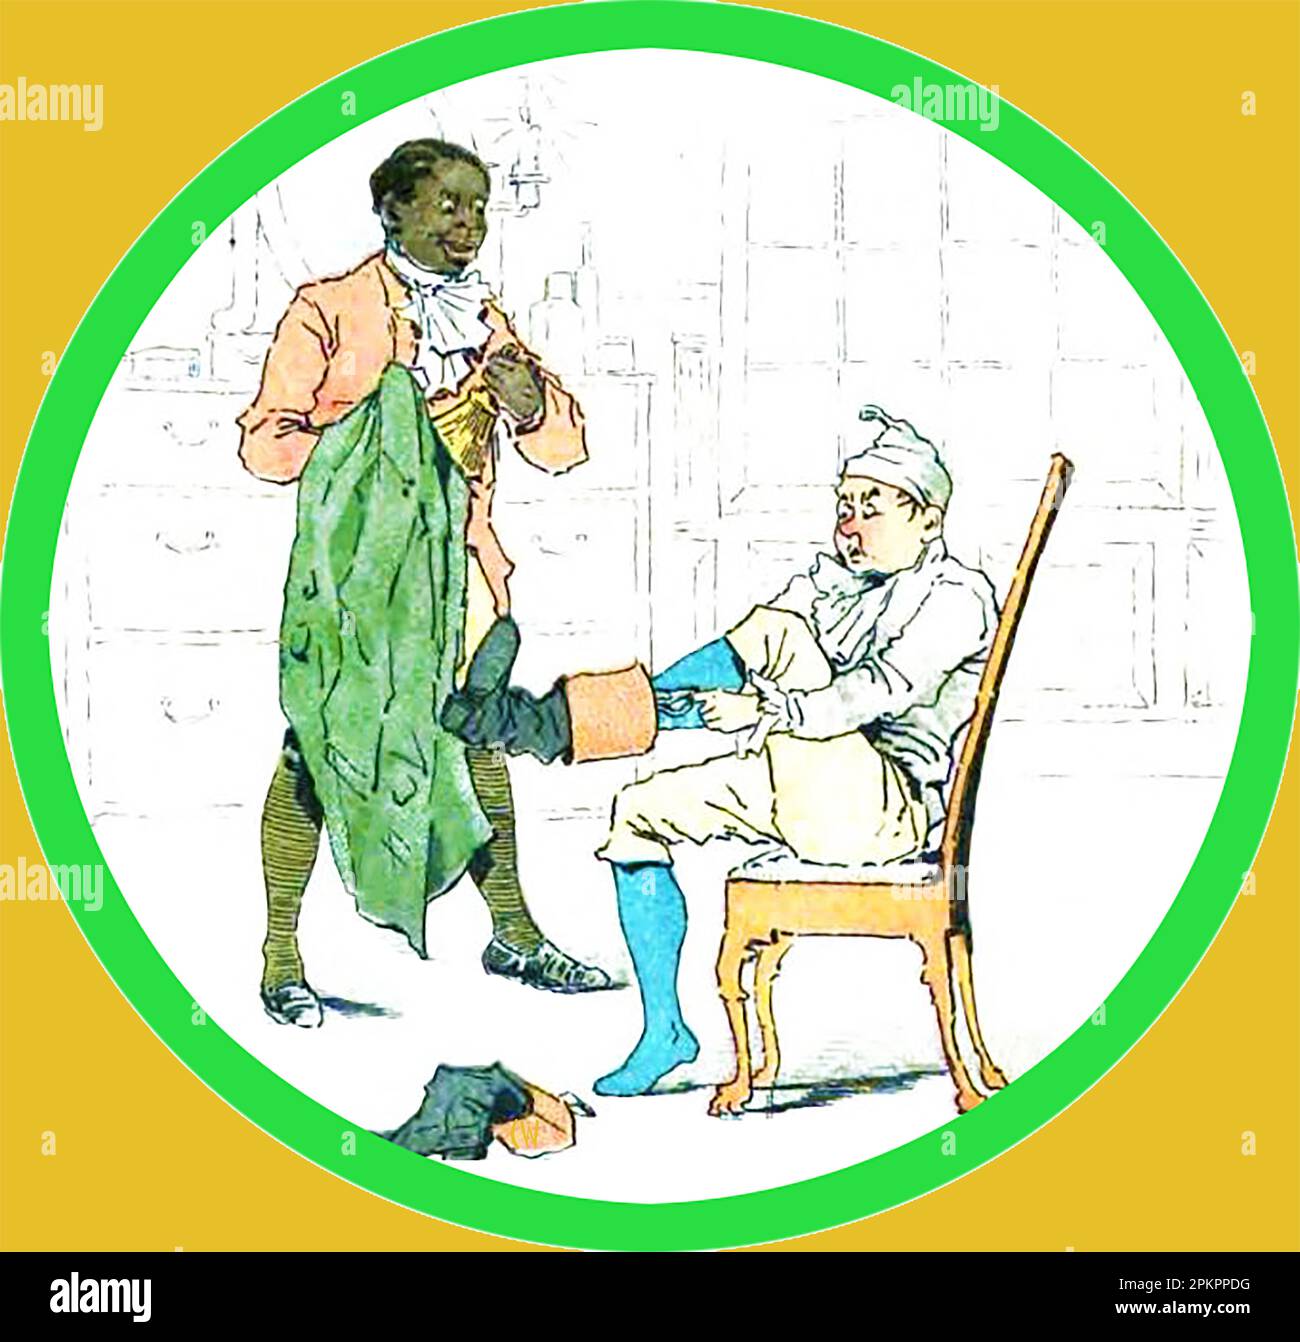 Ein ungewöhnliches farbiges Bild aus dem 19. Jahrhundert, das einen Sklaven zeigt, der auf einer ausländischen Auktion gekauft wurde und als Gentleman arbeitet, der seinem Meister beim Anziehen hilft. Stockfoto